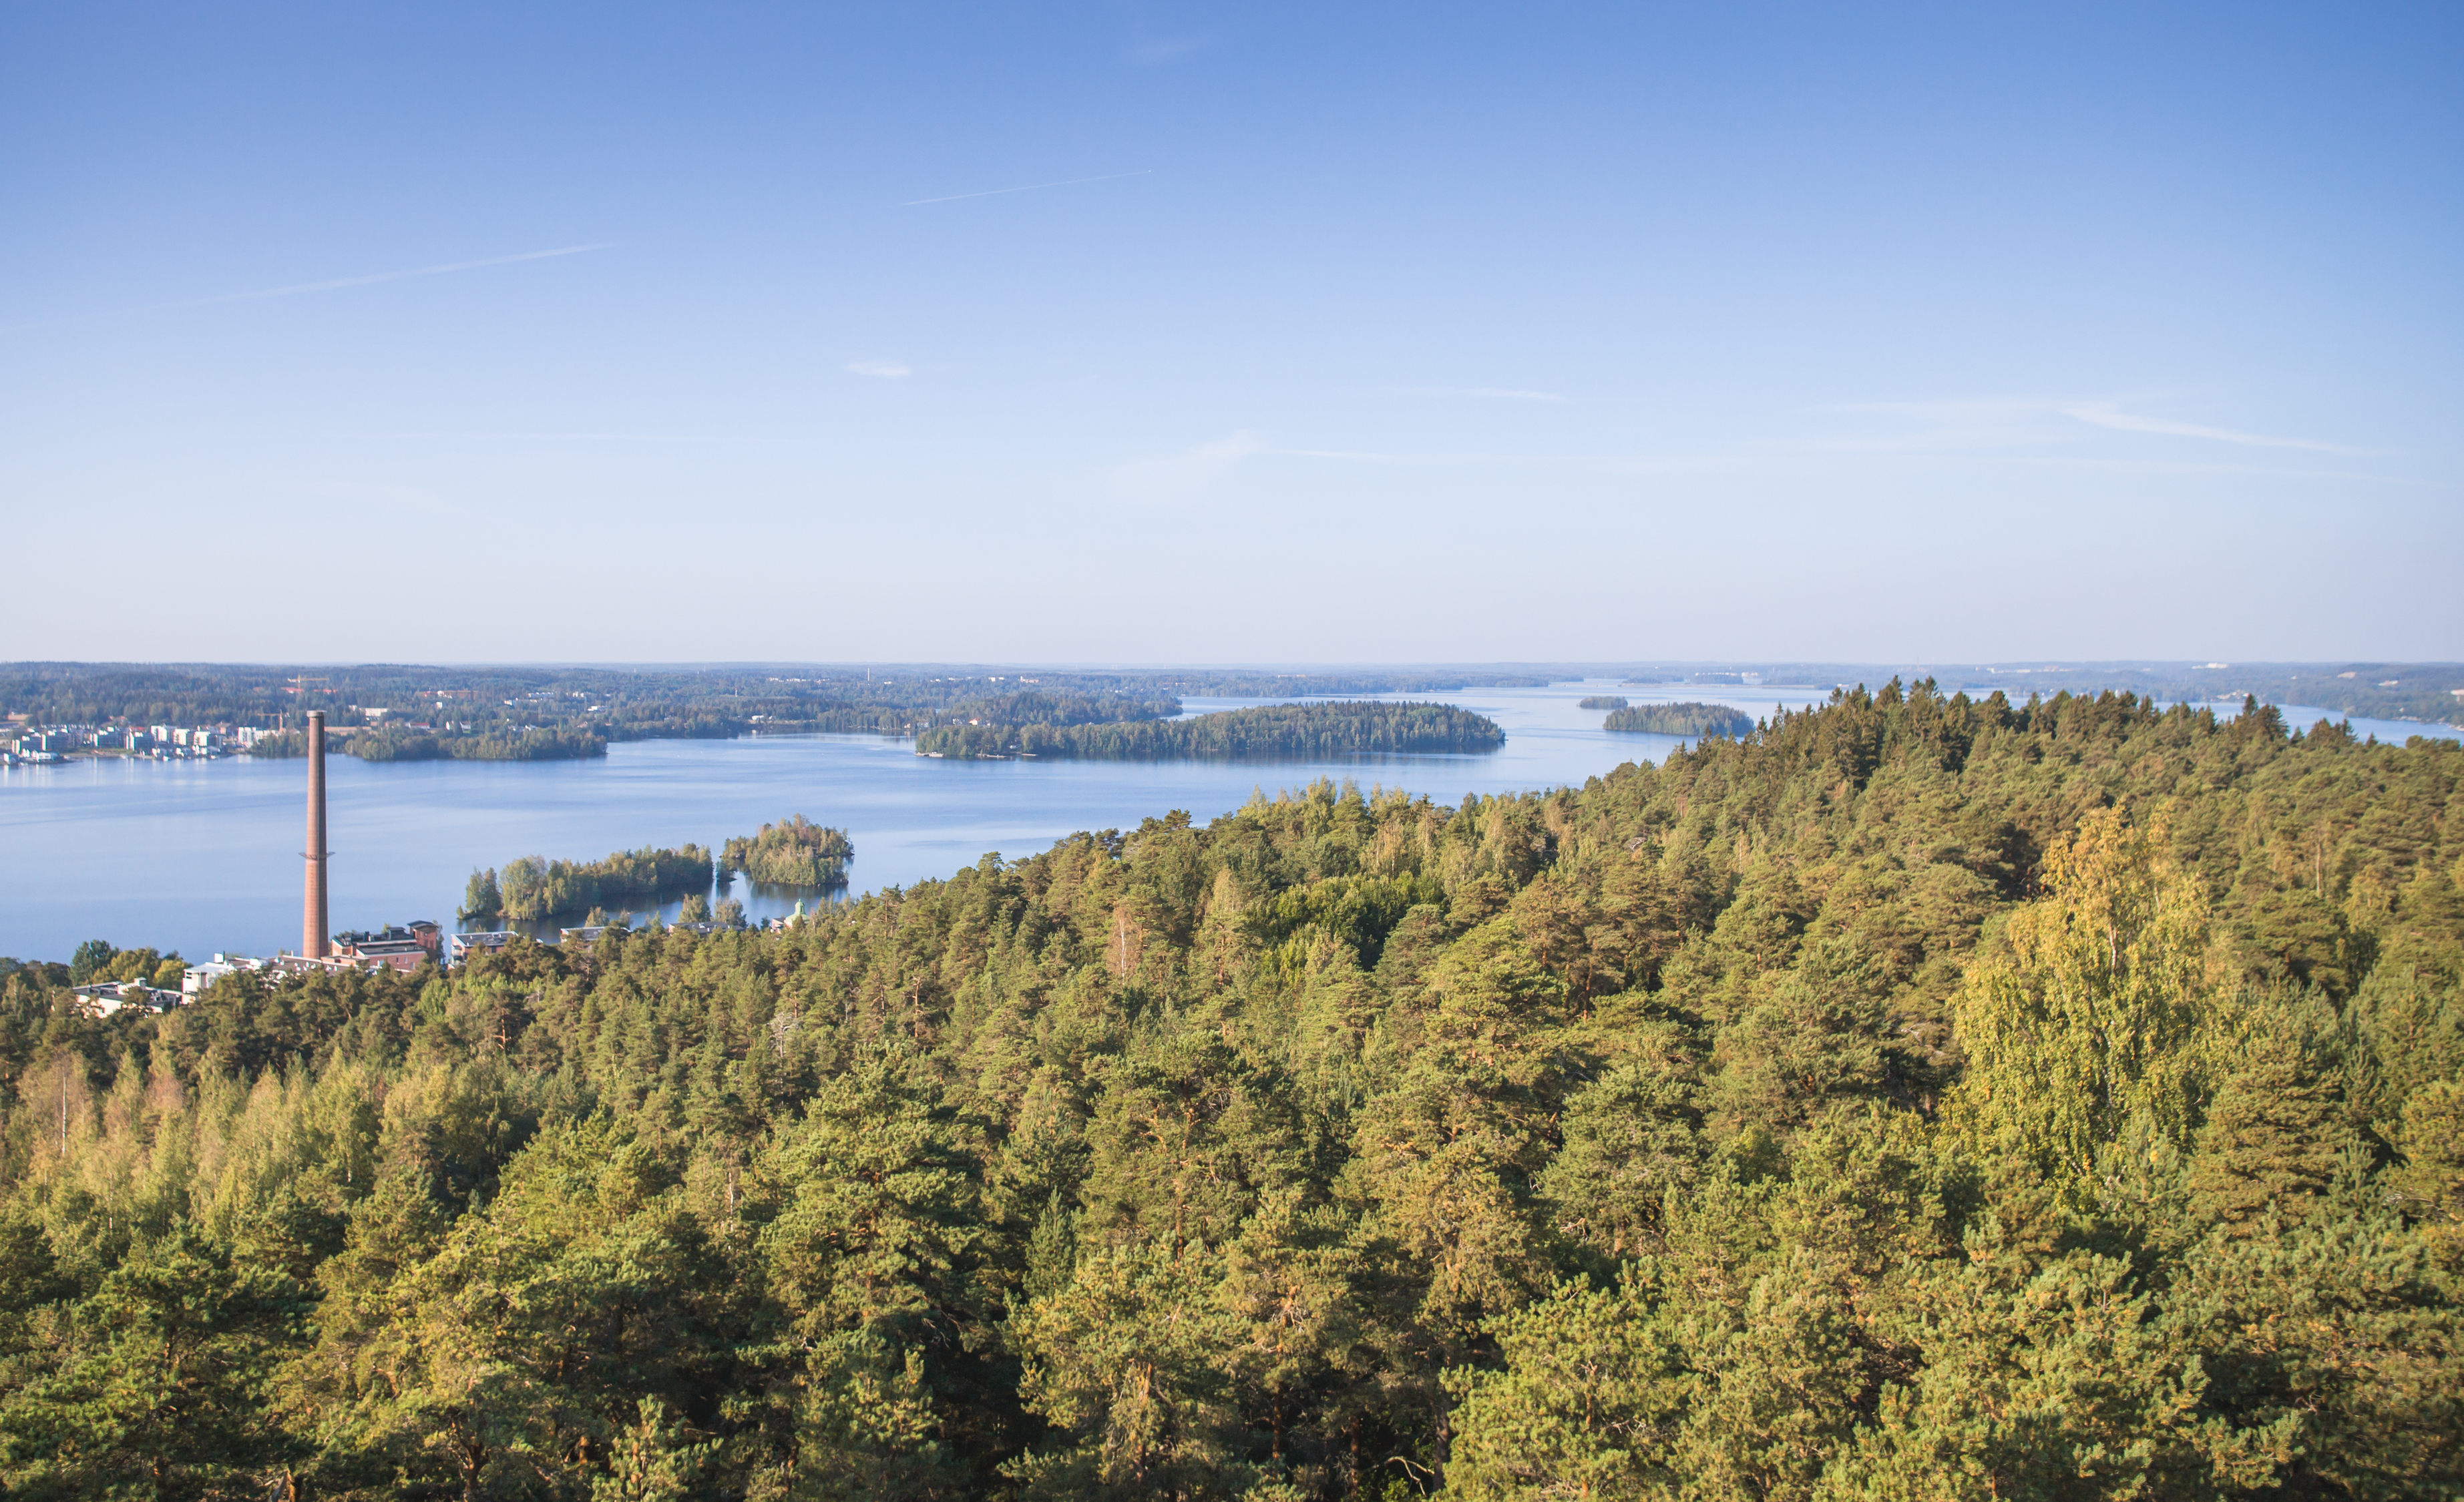 Maisemakuva Tampereesta lintuperspektiivistä, metsän takana siintää sinisenä kimmeltävä Pyhäjärvi.